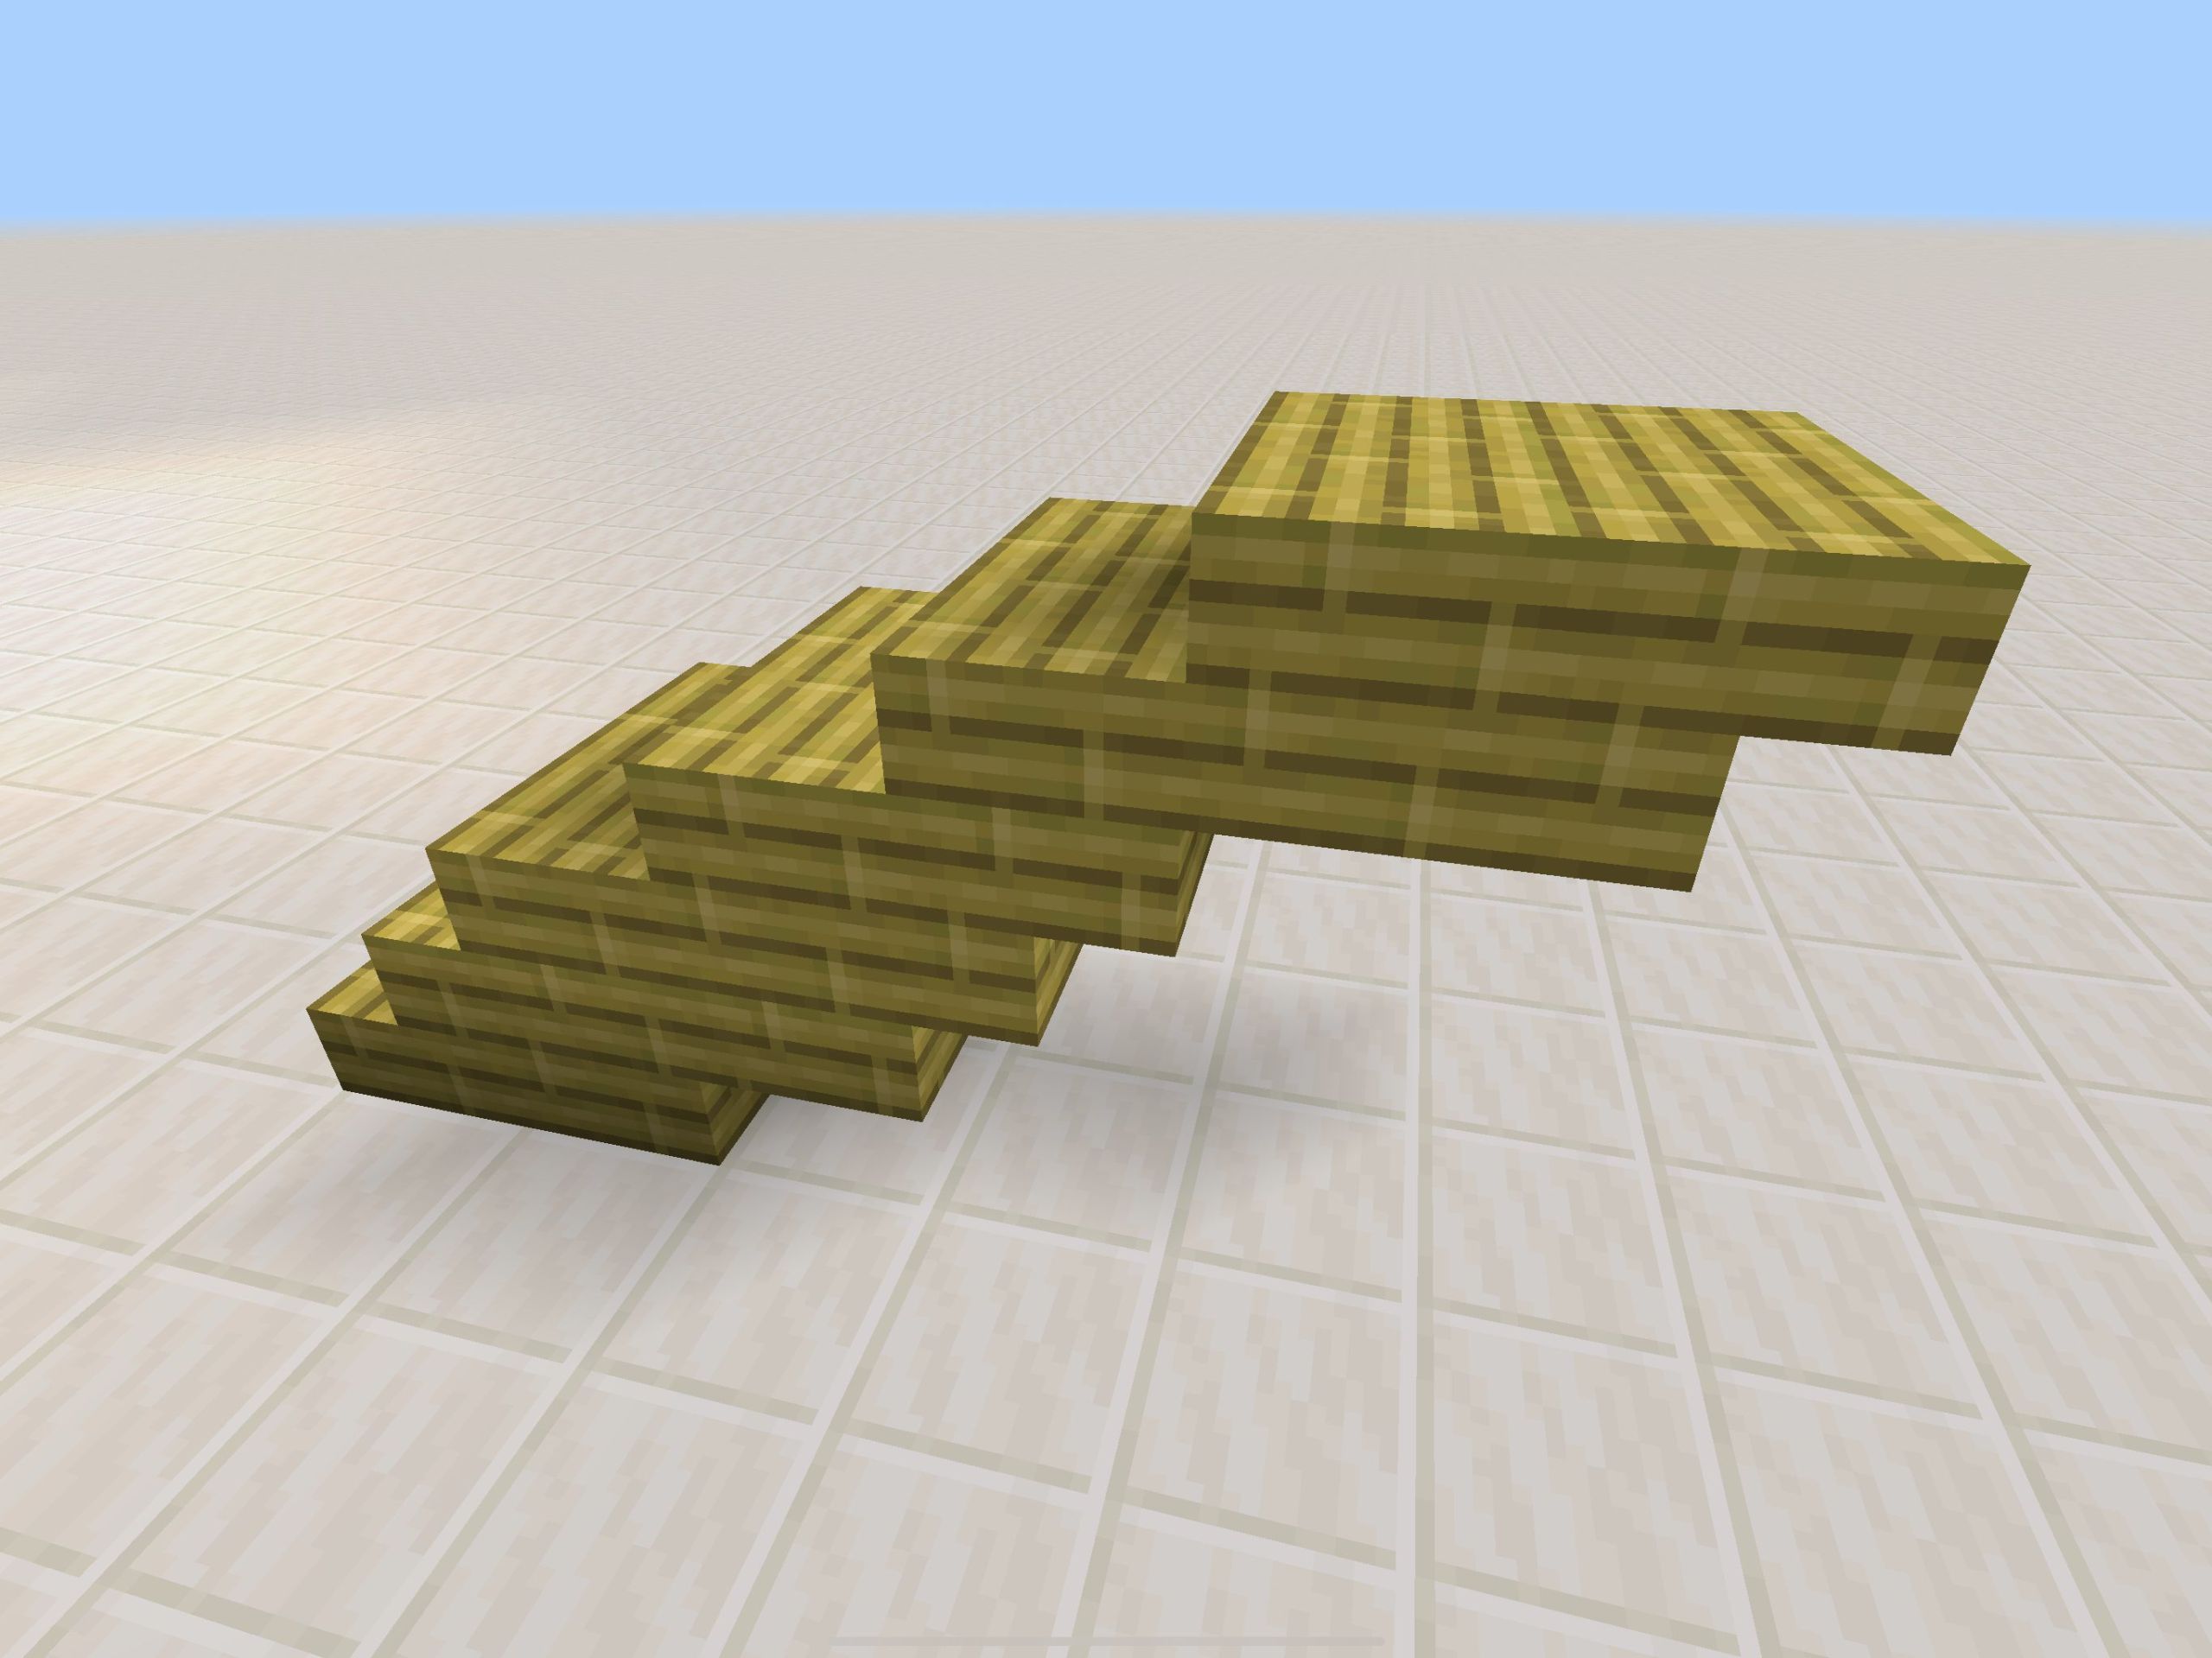 「竹のハーフブロック」→「竹の板材」→「竹の階段」の順で並べる